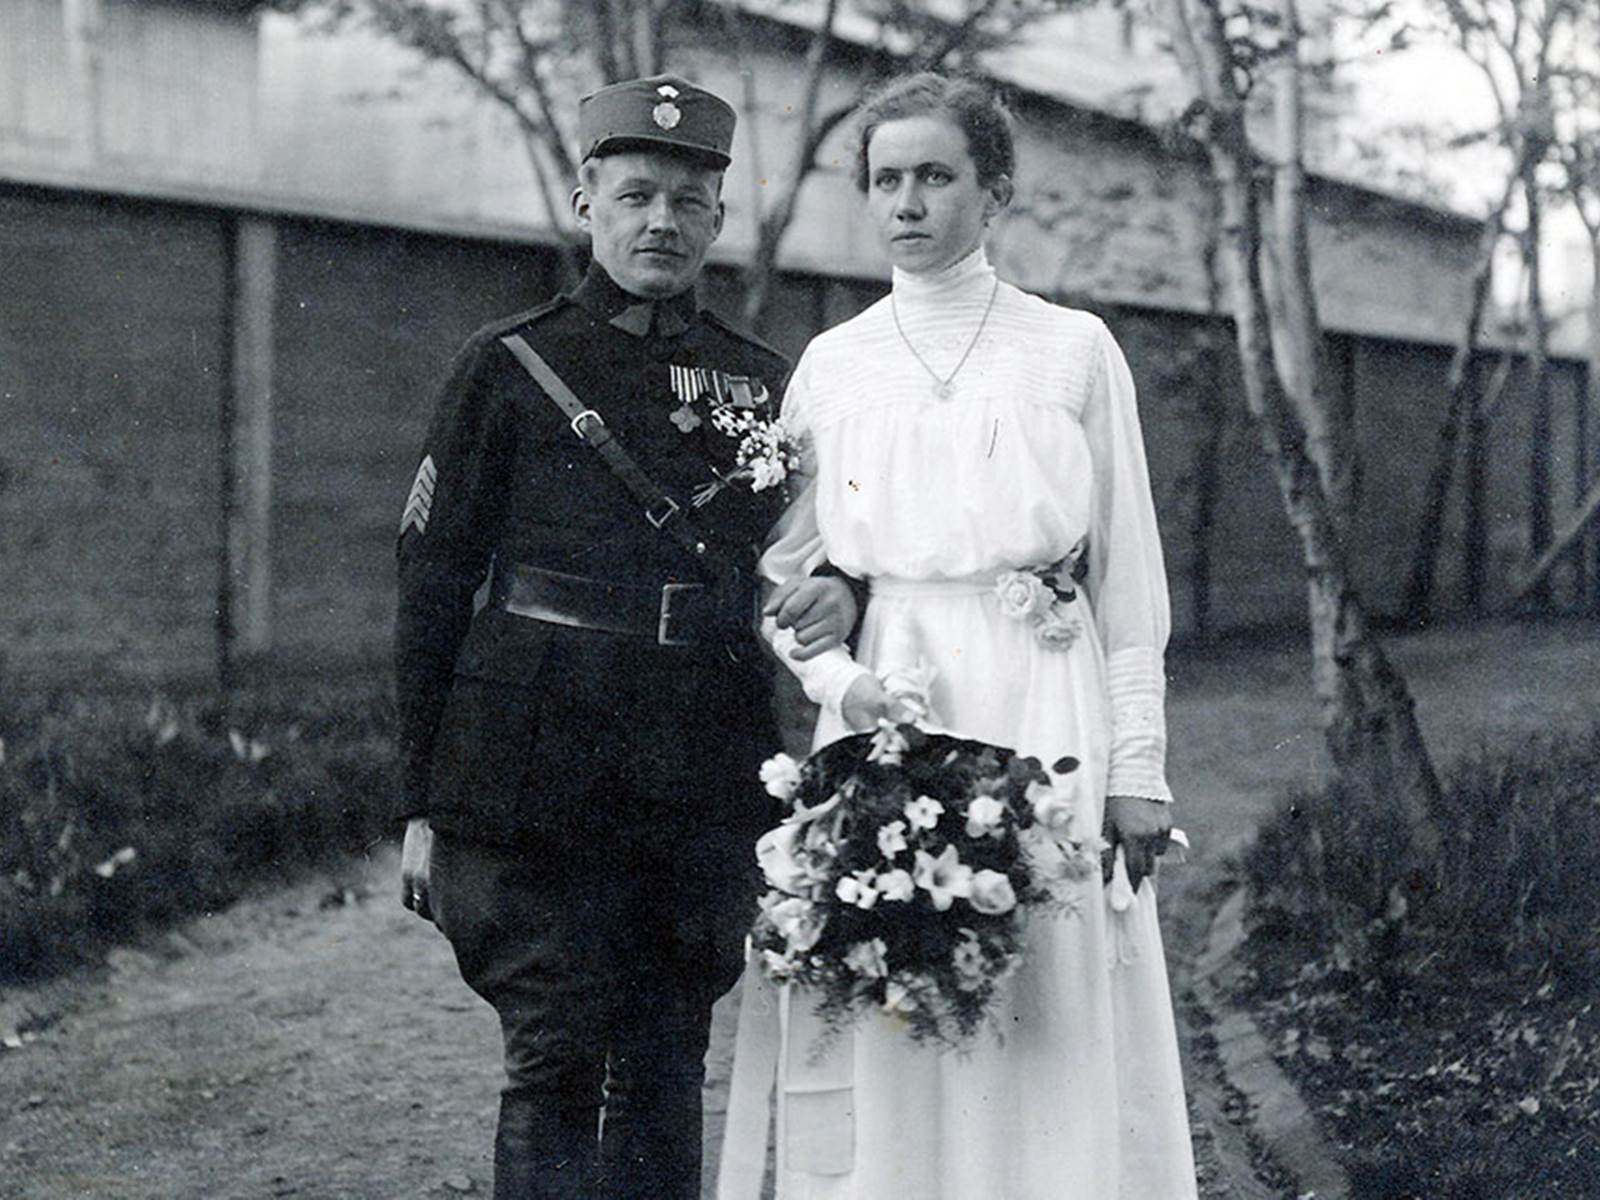 Svatba A. M. Číly s Ninou Krukovskou ve Vladivostoku, 1920